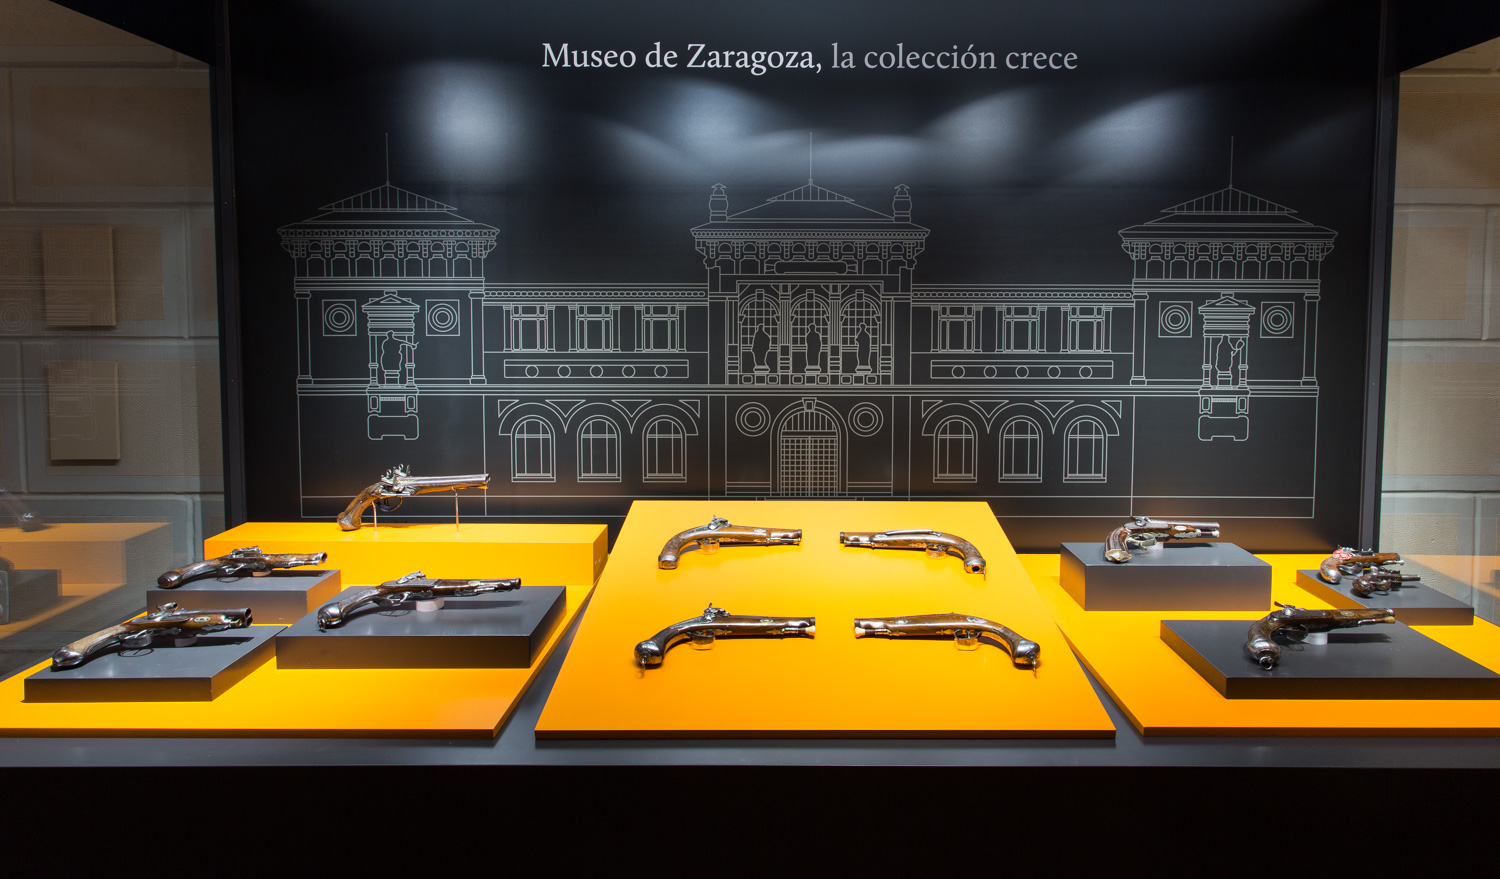 Las pistolas proceden de la industria armera guipuzcoana. Foto: José Garrido- Museo de Zaragoza